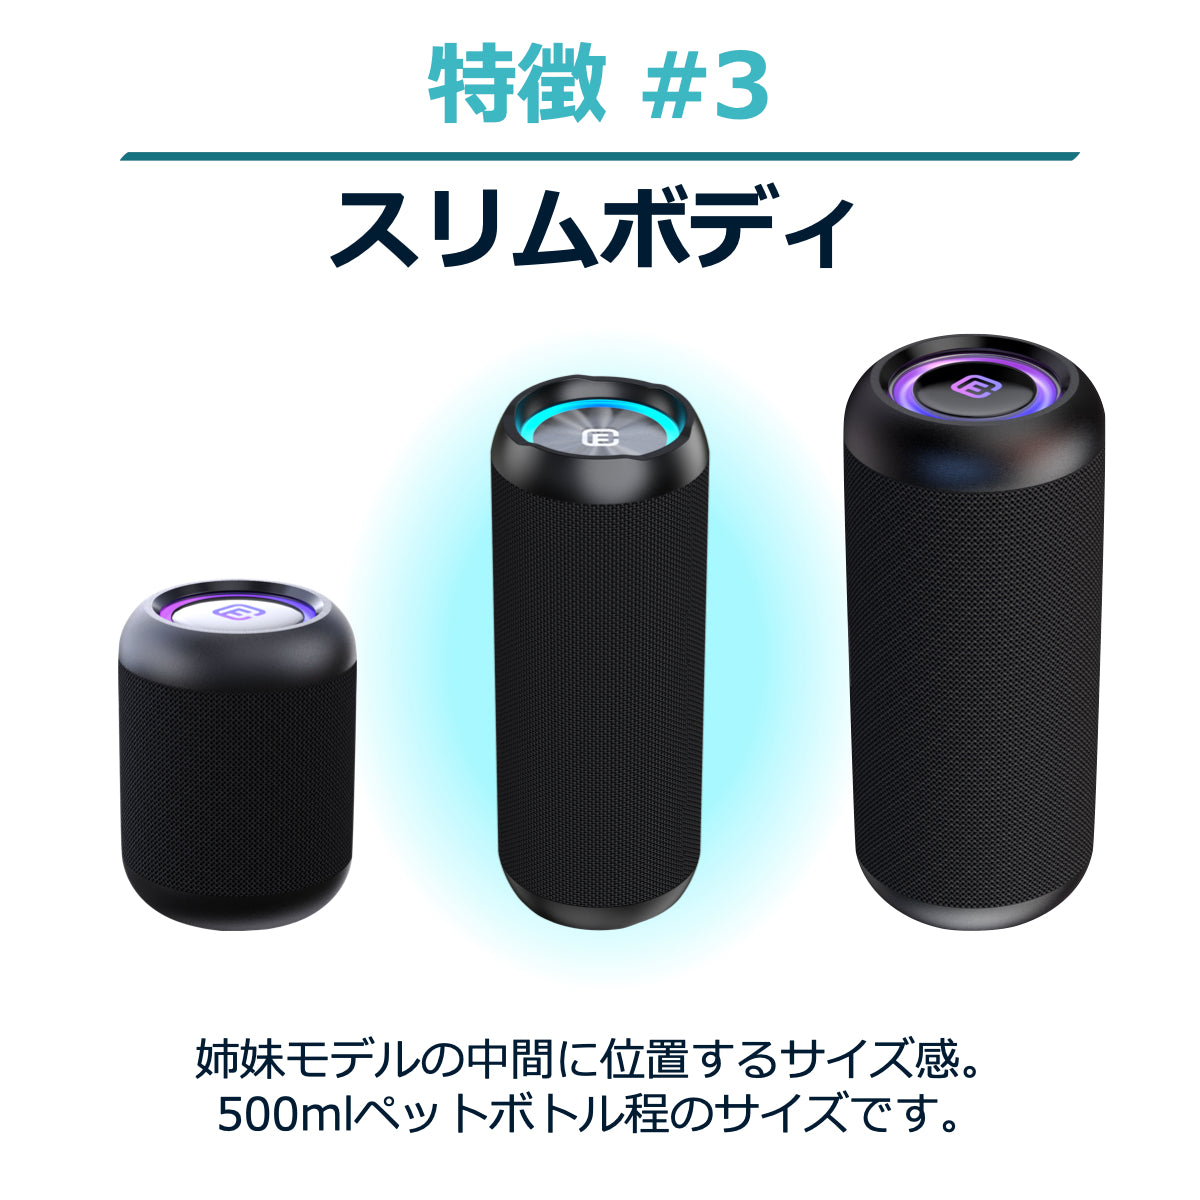 【特価商品】40s スピーカー Bluetooth 5.0 防水 ブルートゥースオーディオ機器